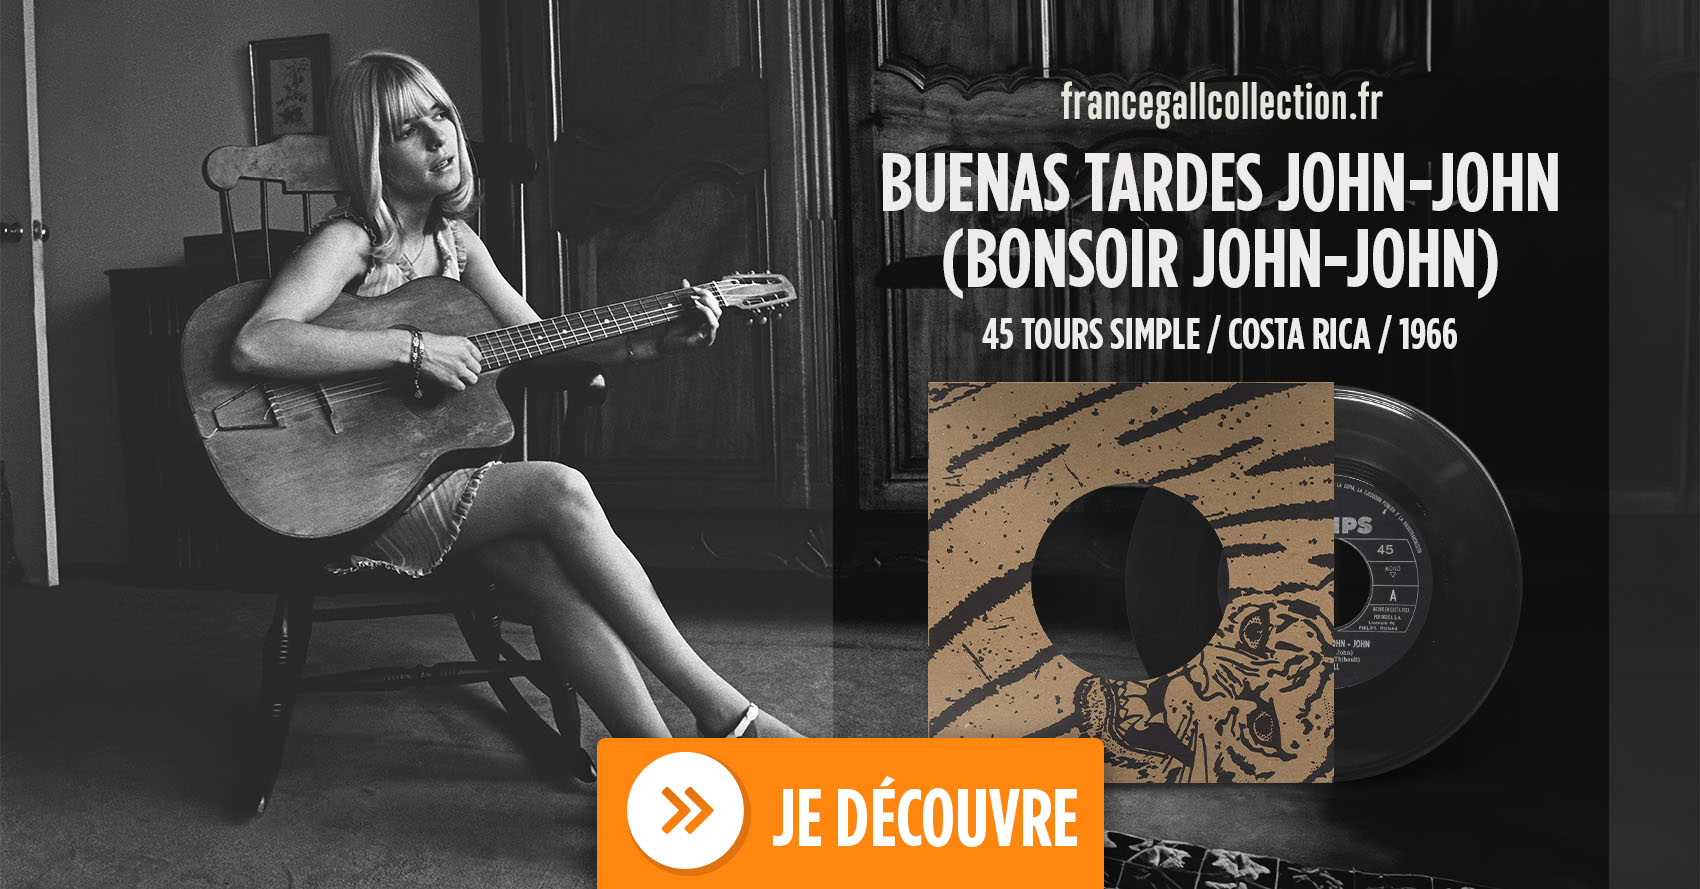 Ce 45 tours, en provenance du Costa Rica, contient les titres Bonsoir John-John et La guerre des chansons. Les chansons sont interprétées en français.